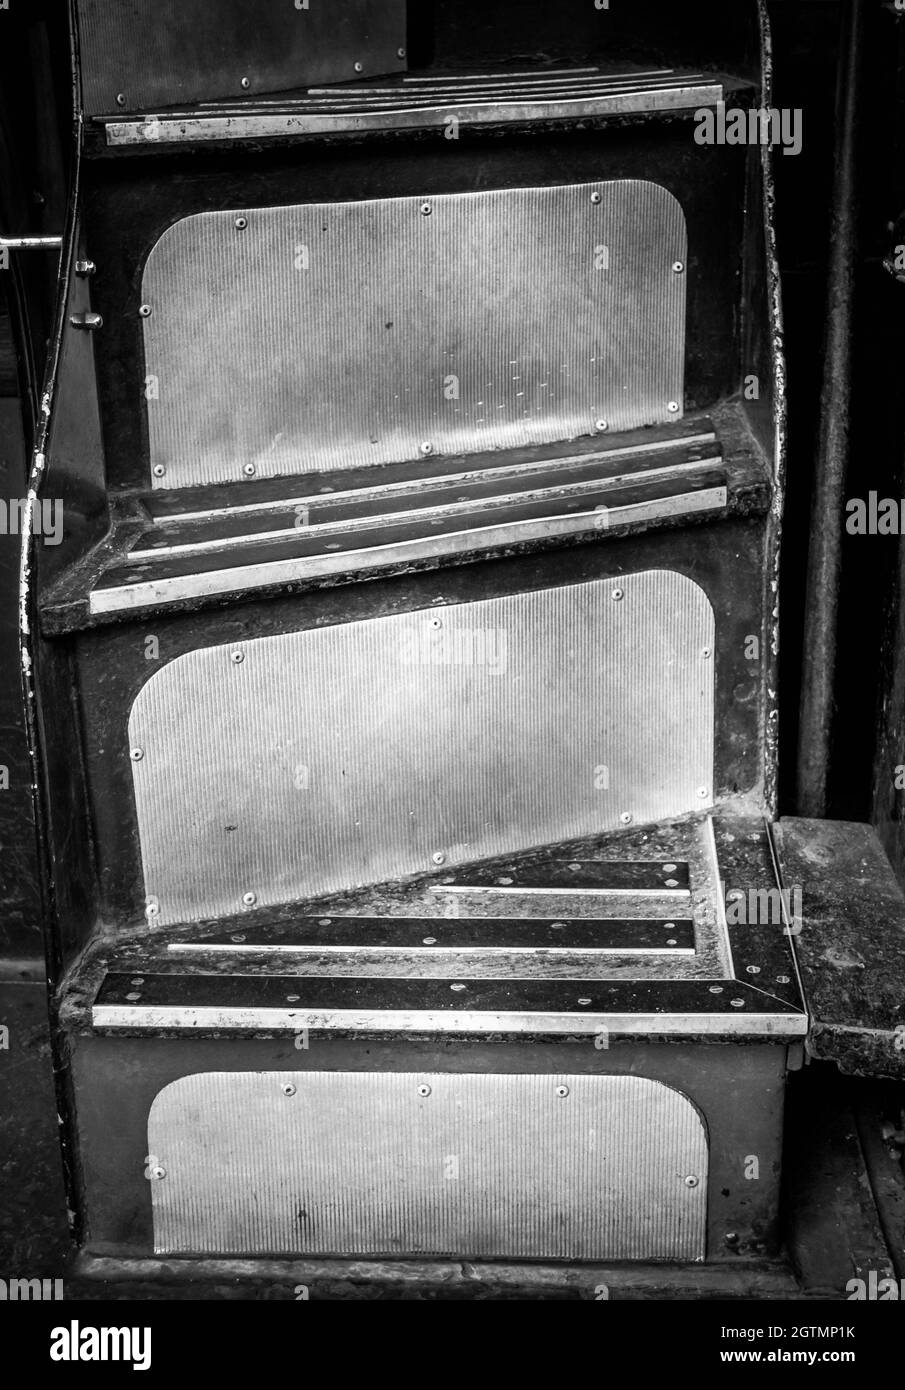 Image en noir et blanc des escaliers de l'ancien tramway au musée des transports Lowestoft Suffolk Royaume-Uni, menant au pont supérieur. Personne. Banque D'Images